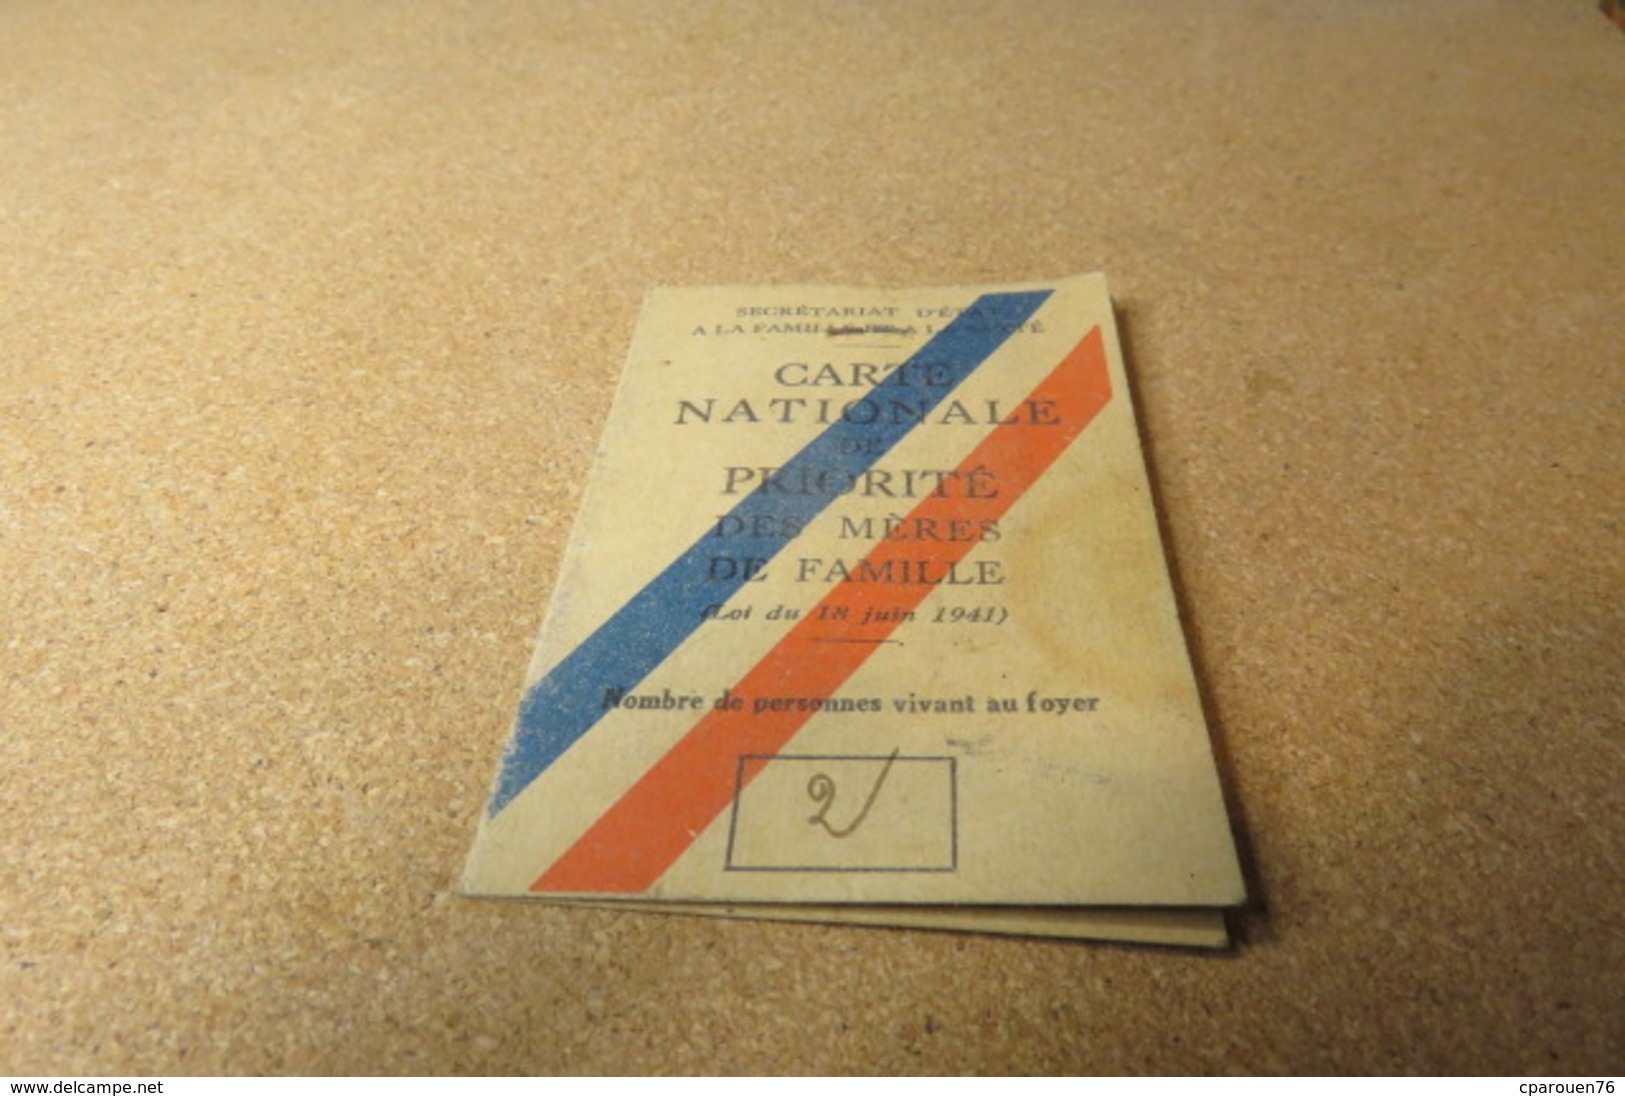 Carte Nationale De Priorité De Mère De Famille  Mme R...Bihorel 1944 Cachet Etat De Vichy - Ohne Zuordnung